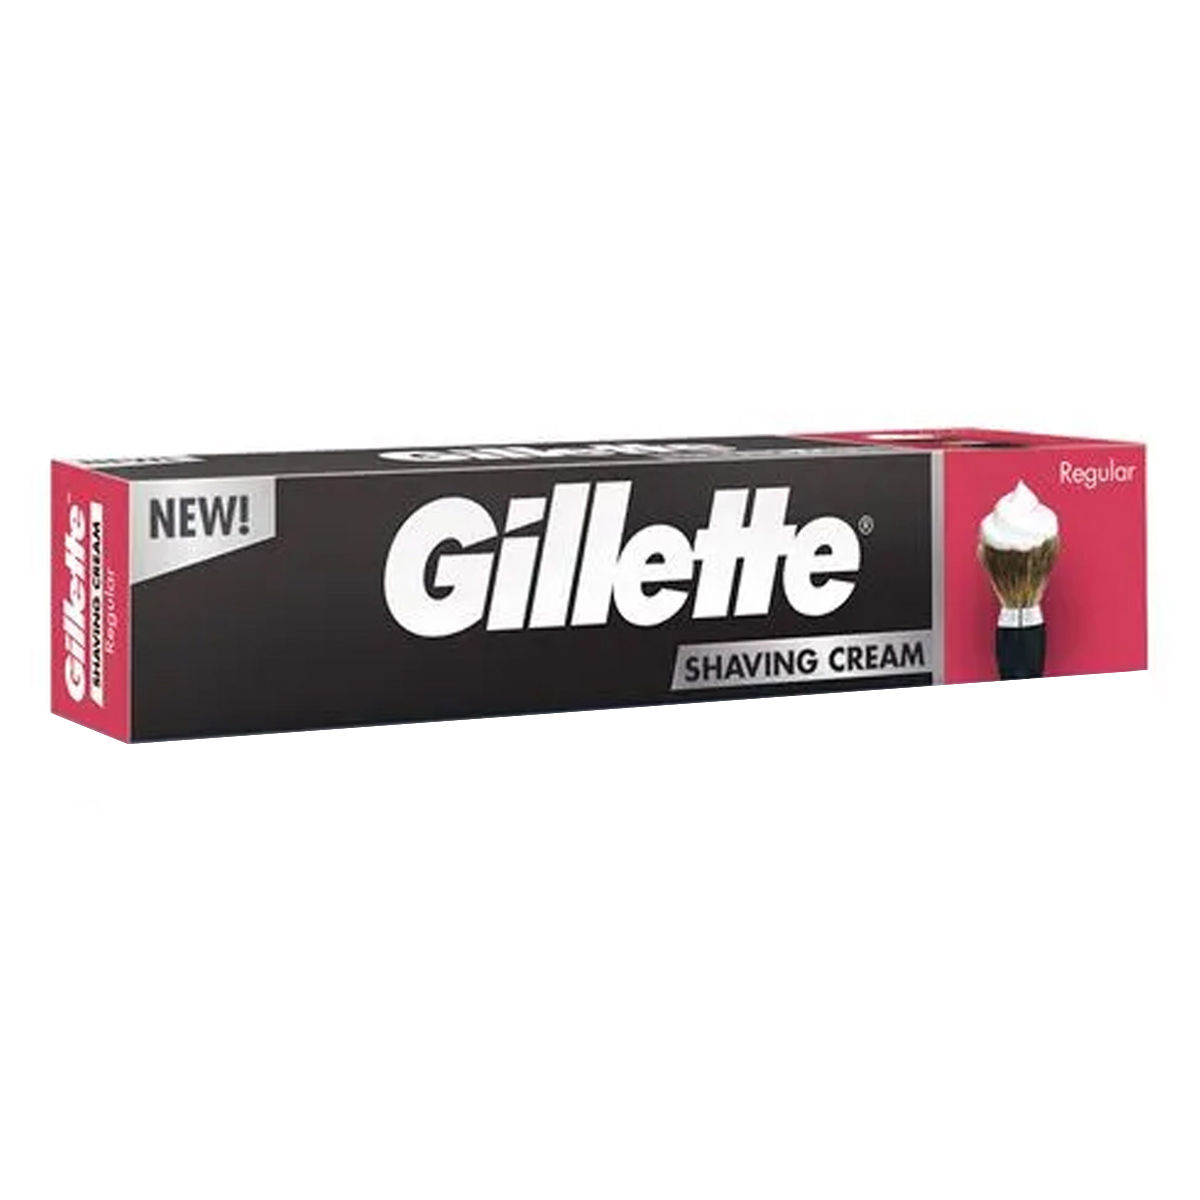 Buy Gillette Regular Shaving Cream, 30 gm Online